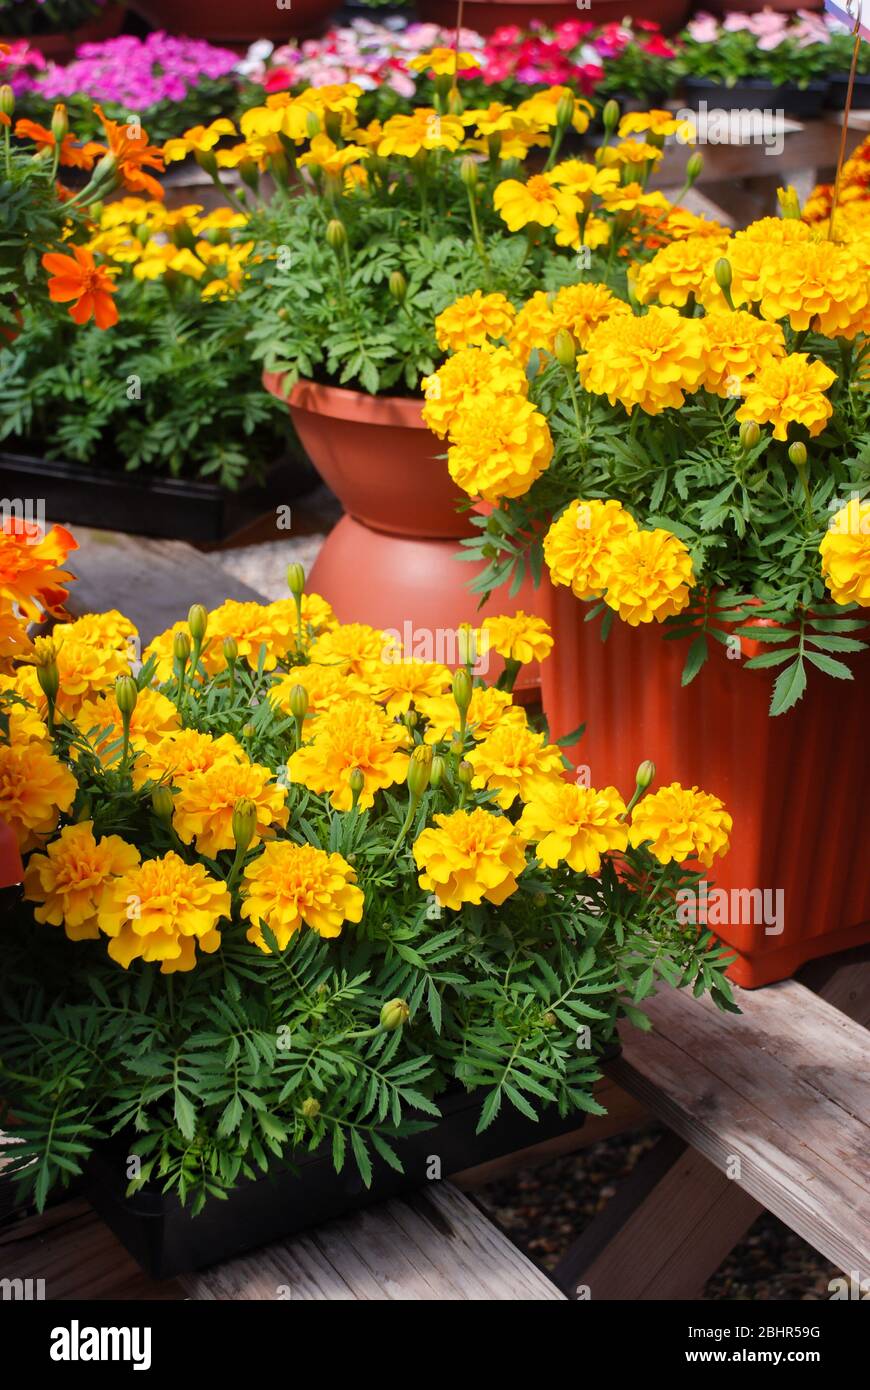 Tagetes patula marigola francese in fiore, fiori gialli arancio, foglie verdi, pianta di vaso Foto Stock